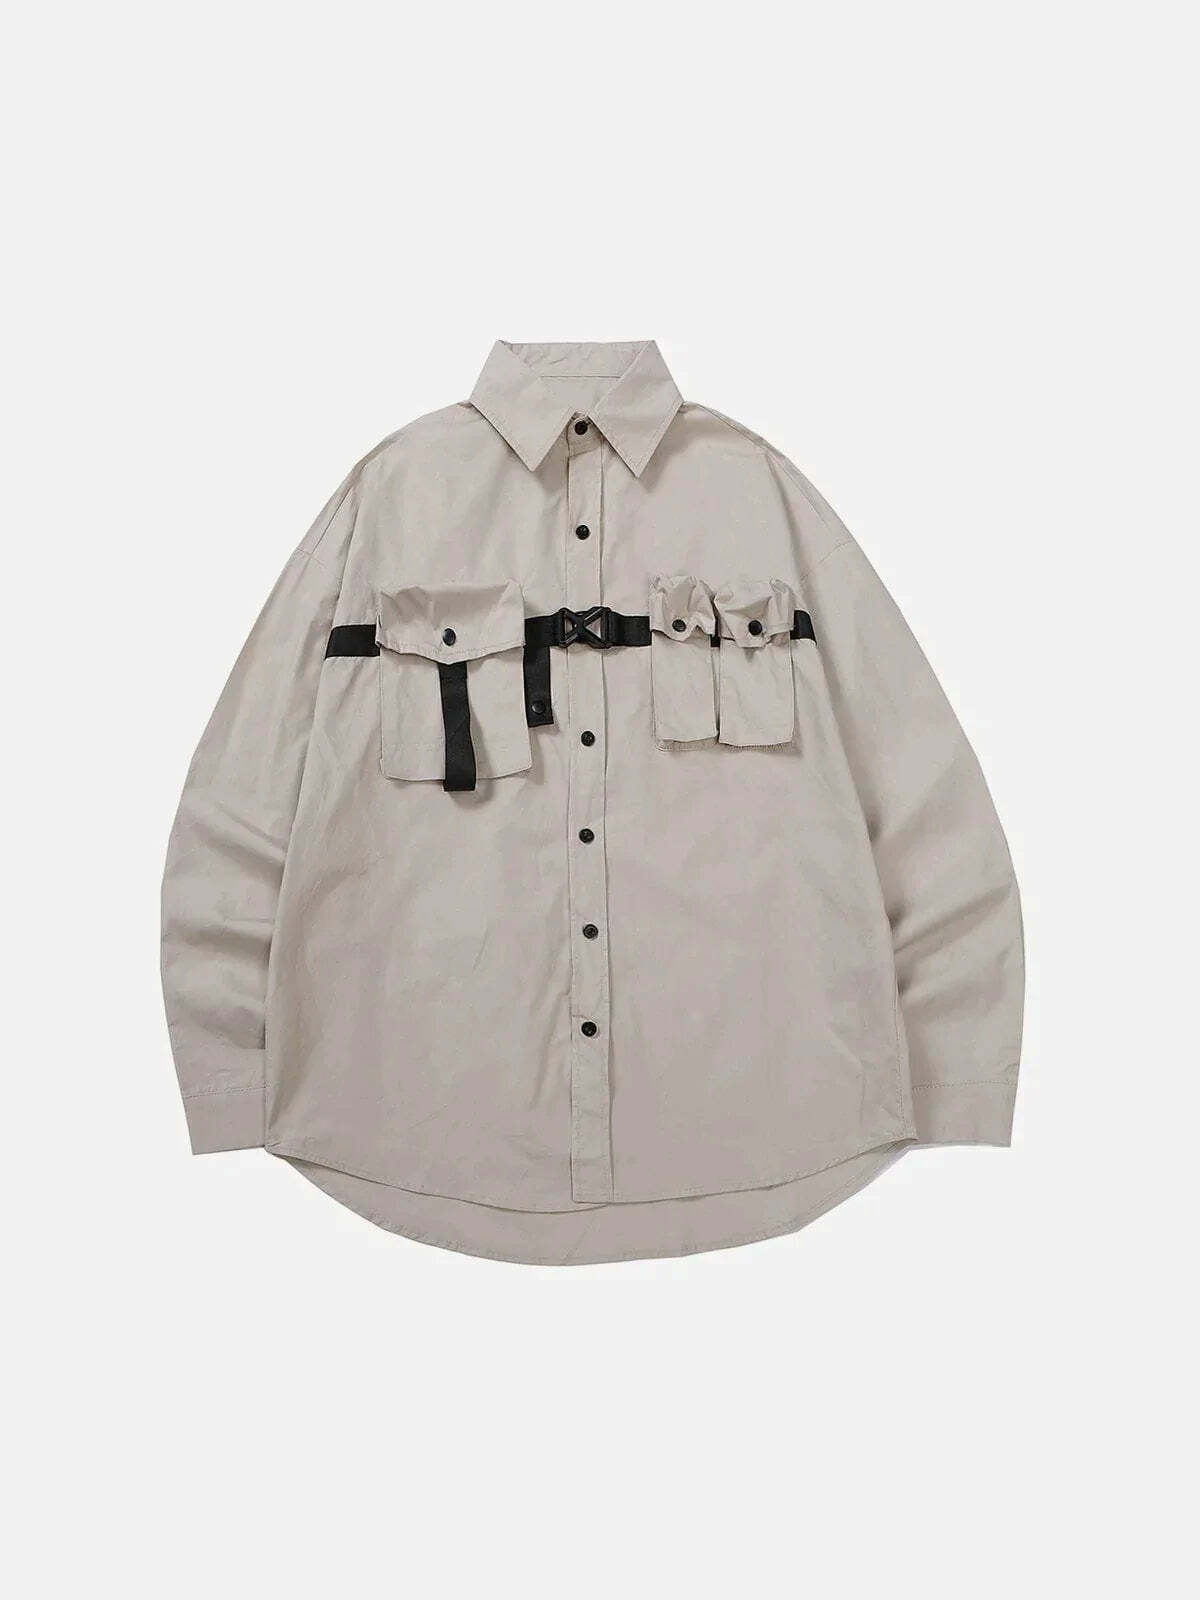 multipocket longsleeved shirt edgy streetwear essential 6652